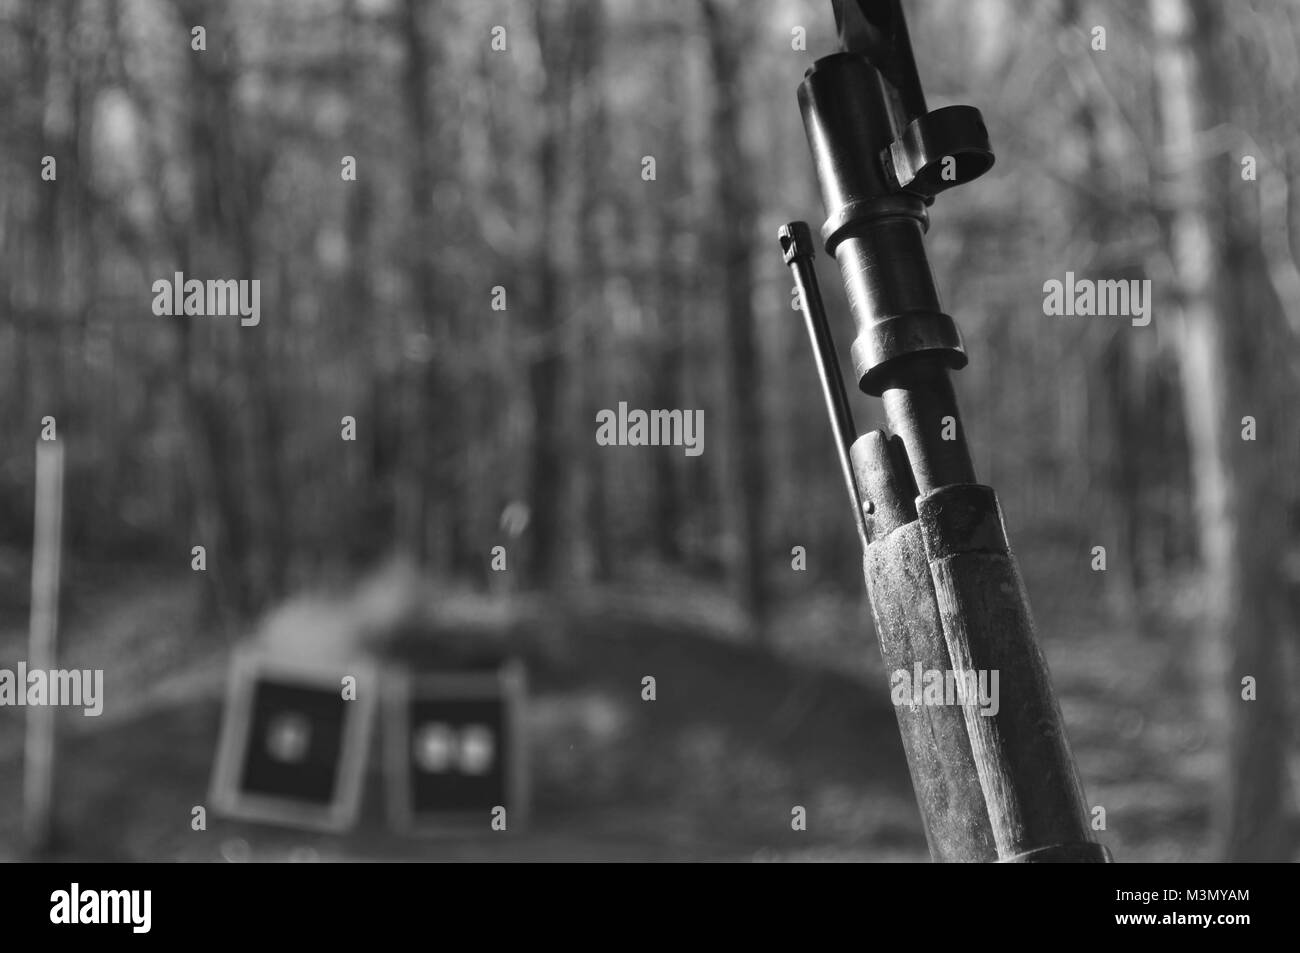 Black and White Image of a Mosin Nagant Gun Rifle at a Shooting Range Stock Photo